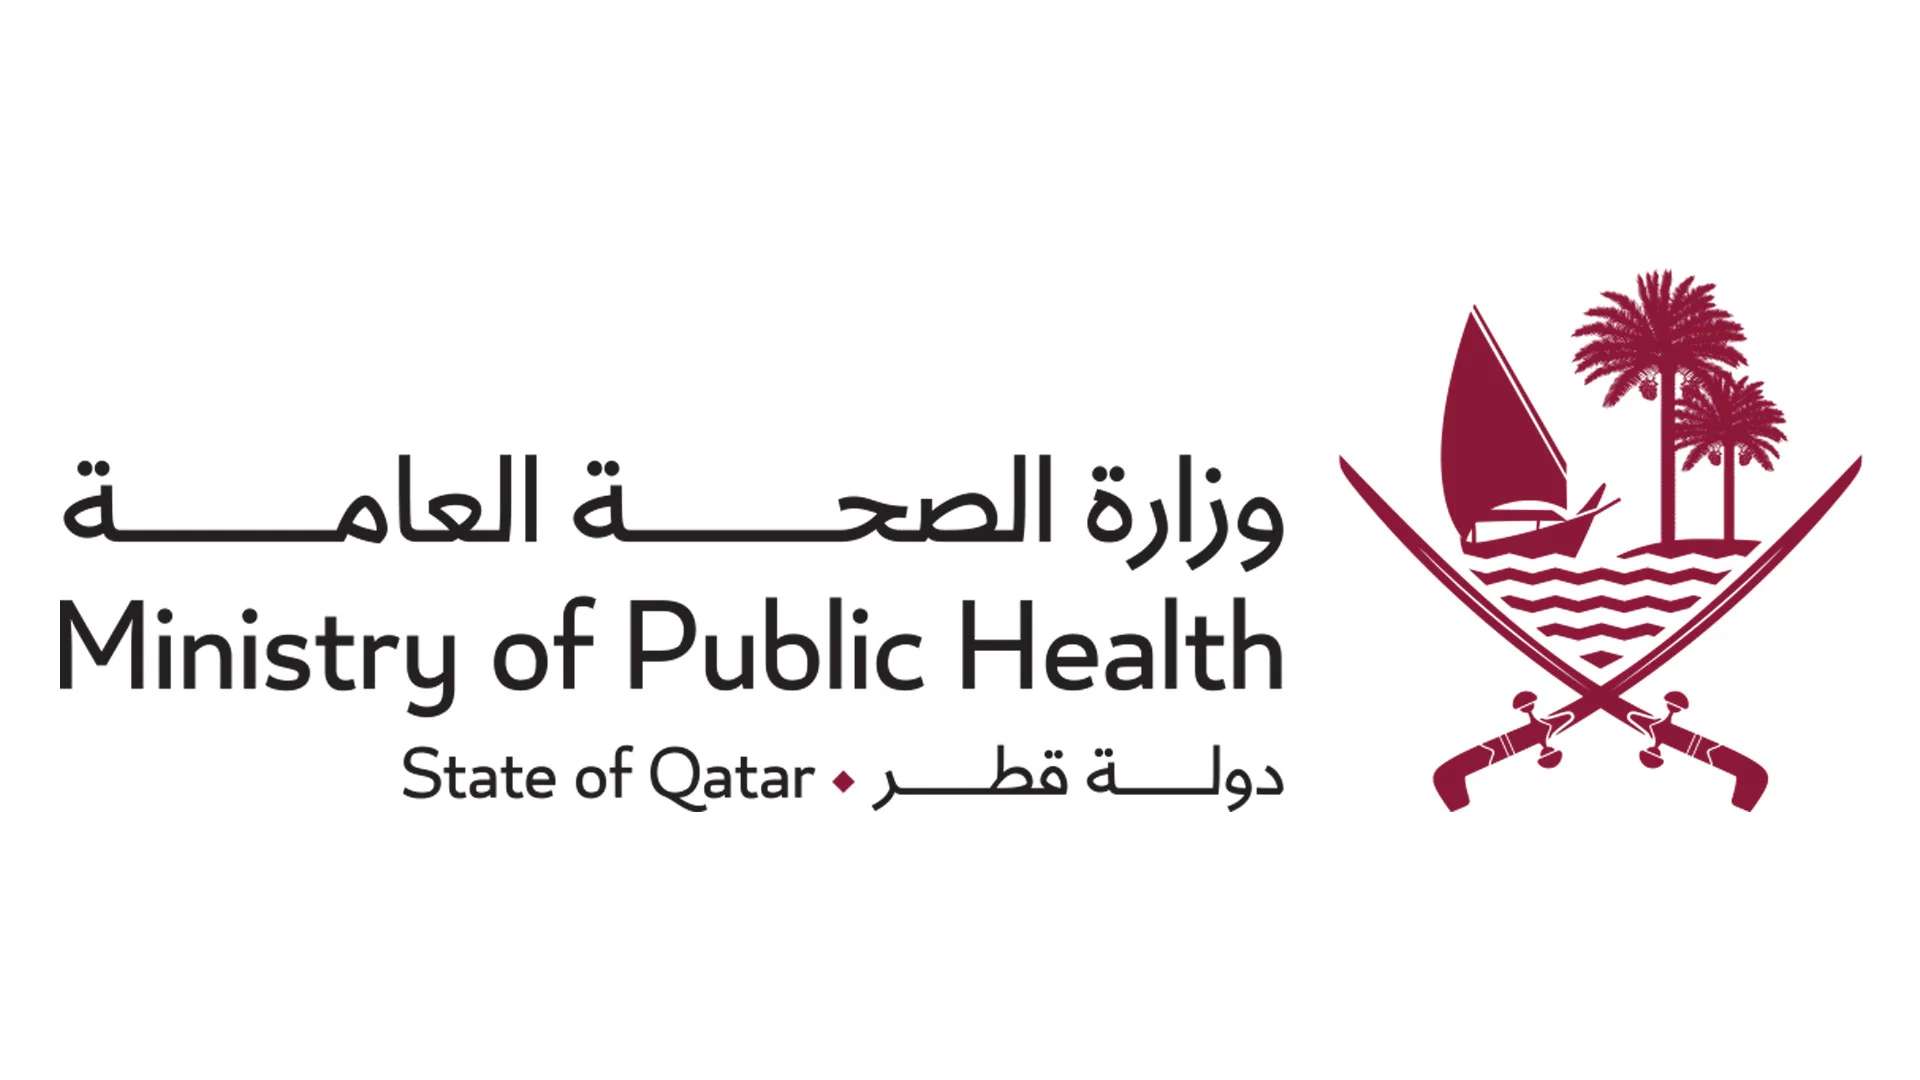 تطوير خطة عمل وطنية للسمنة - قطر